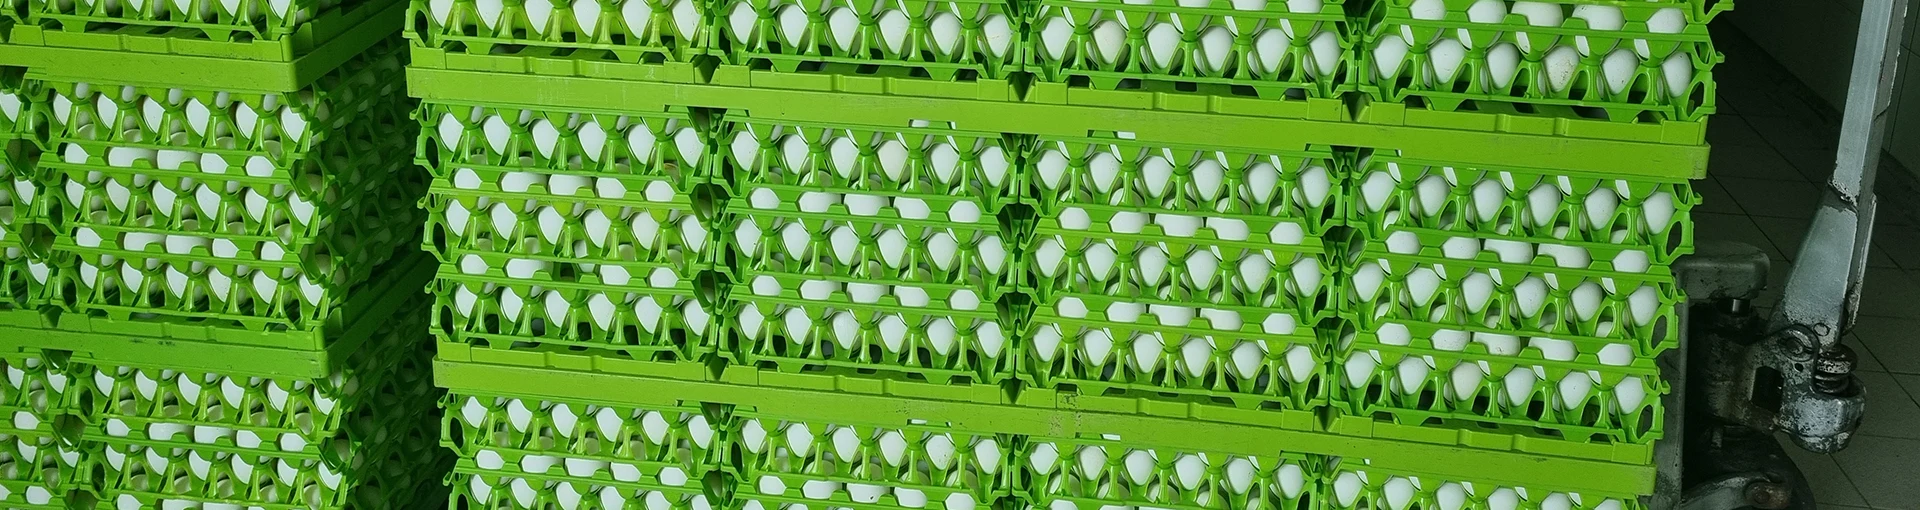 jajka w zielonych wytłaczankach